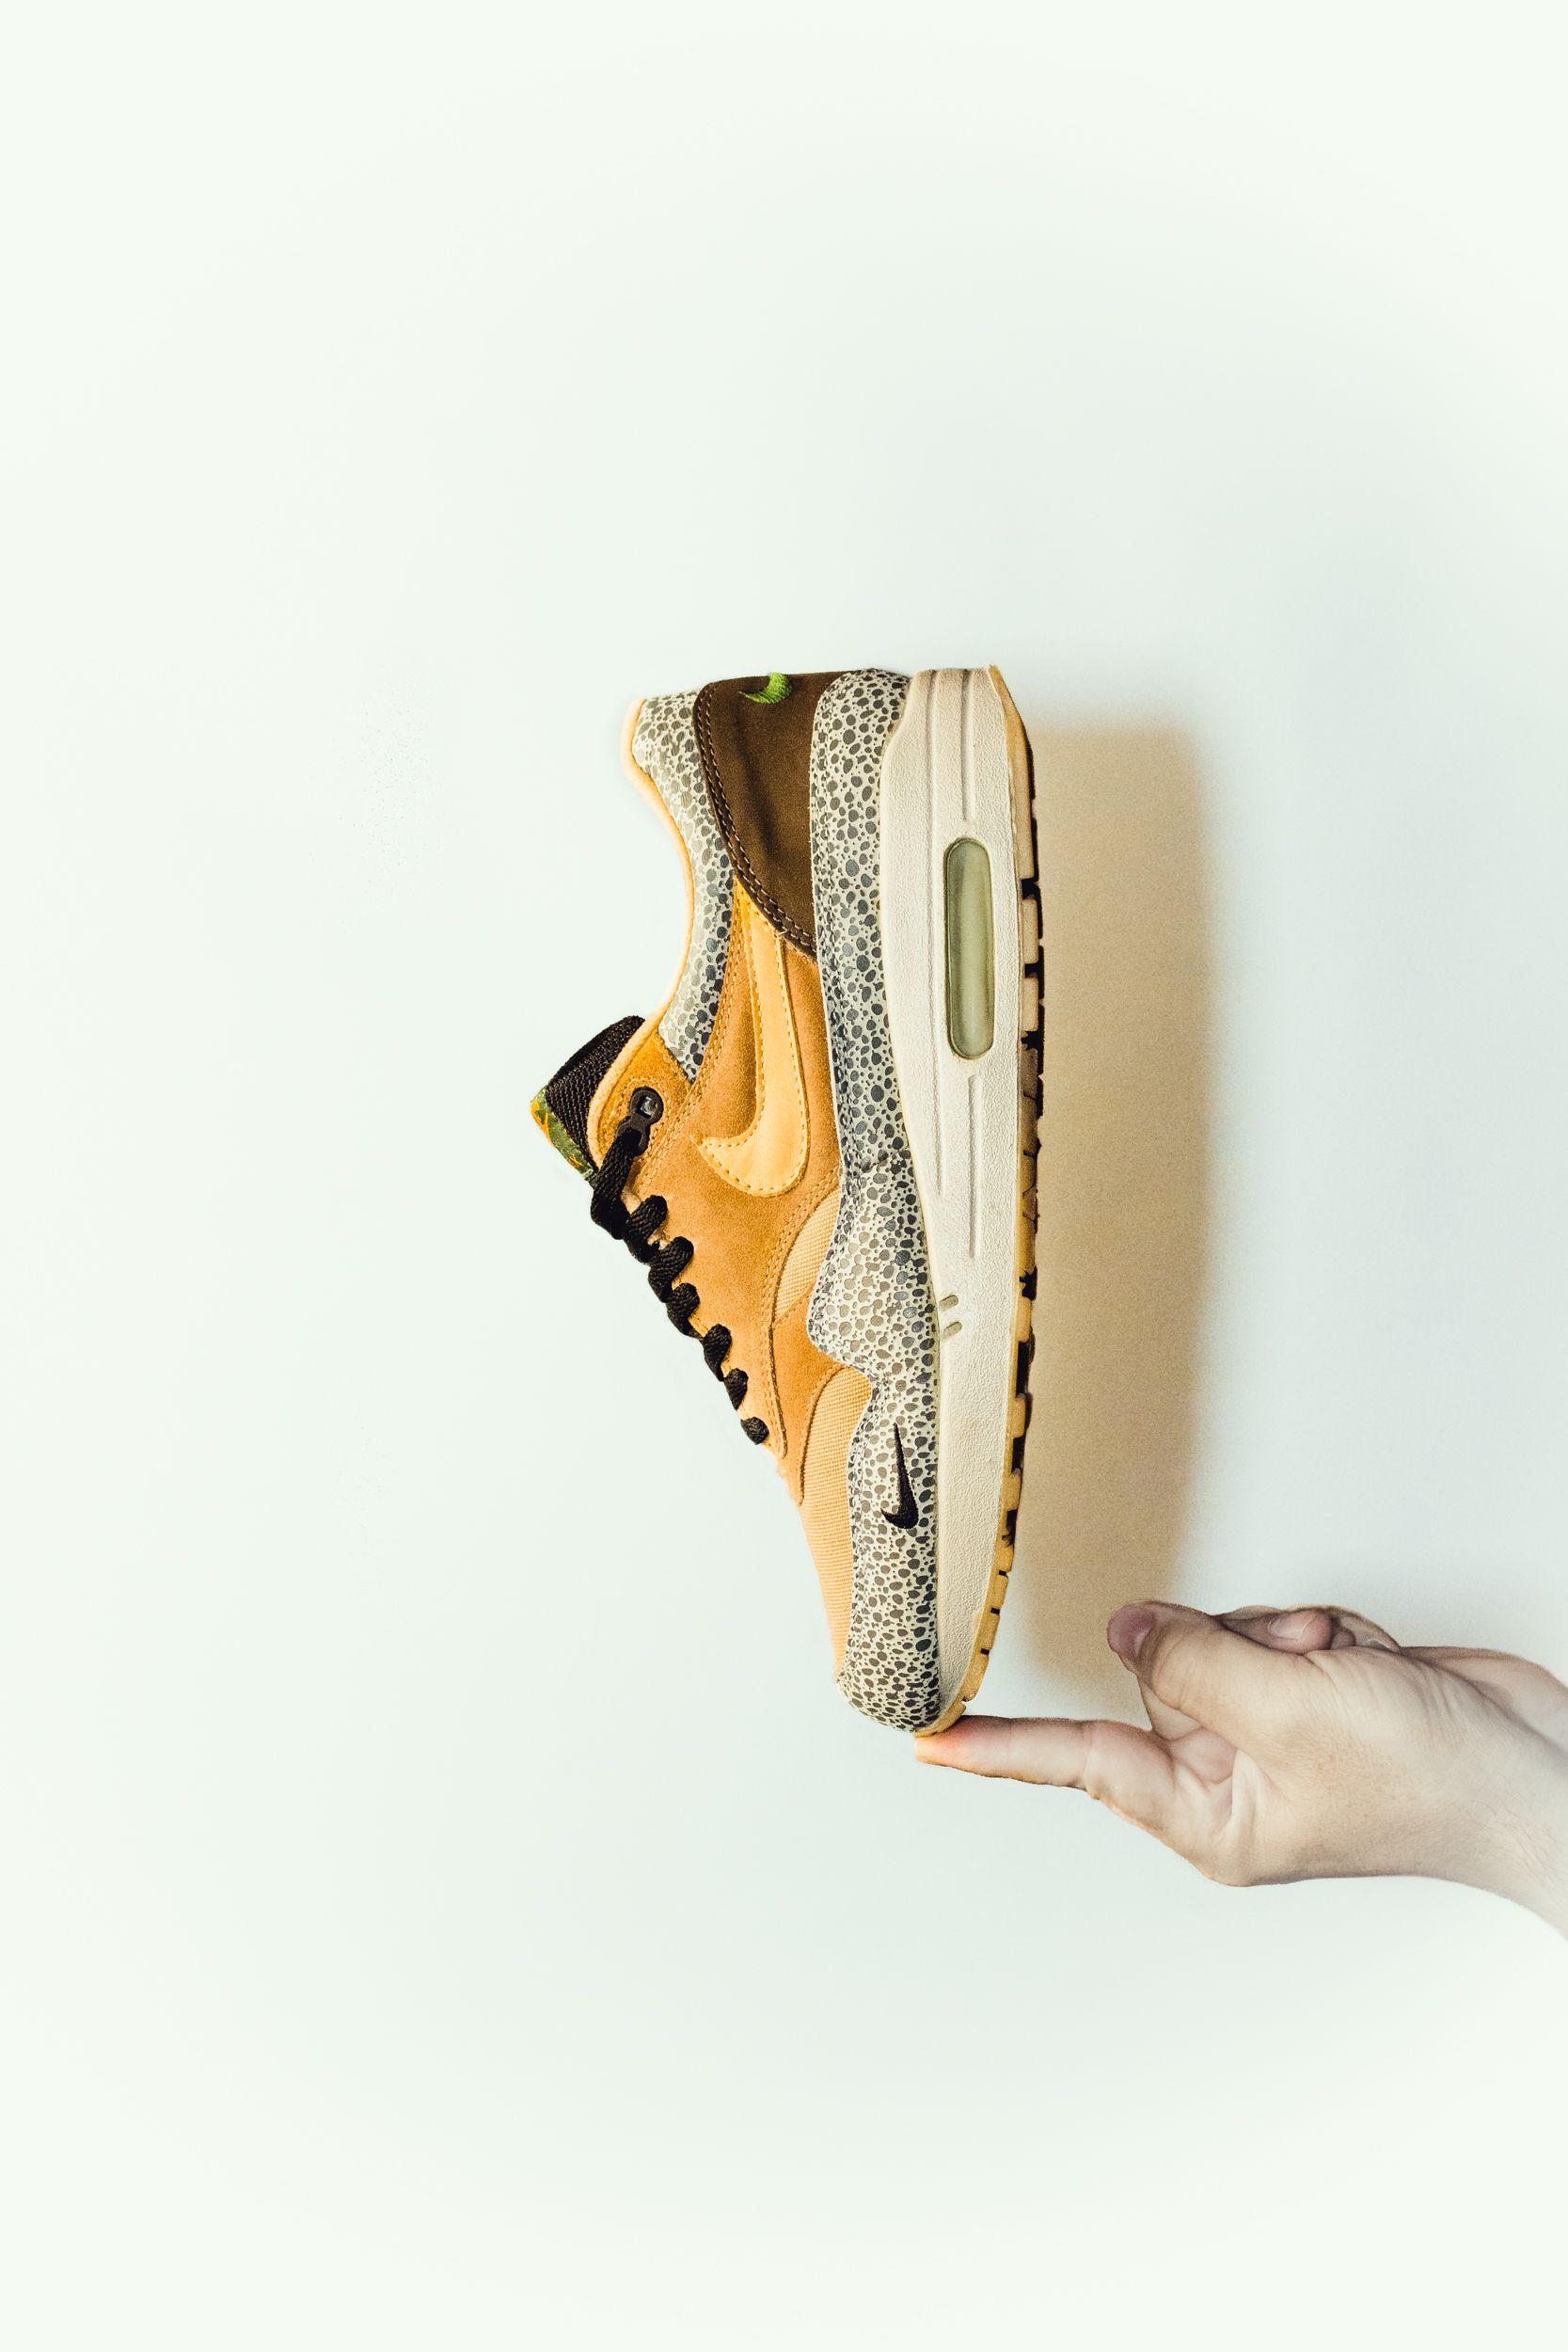 Wallpaper: Nike Air Max 1 B Atmos “Safari”